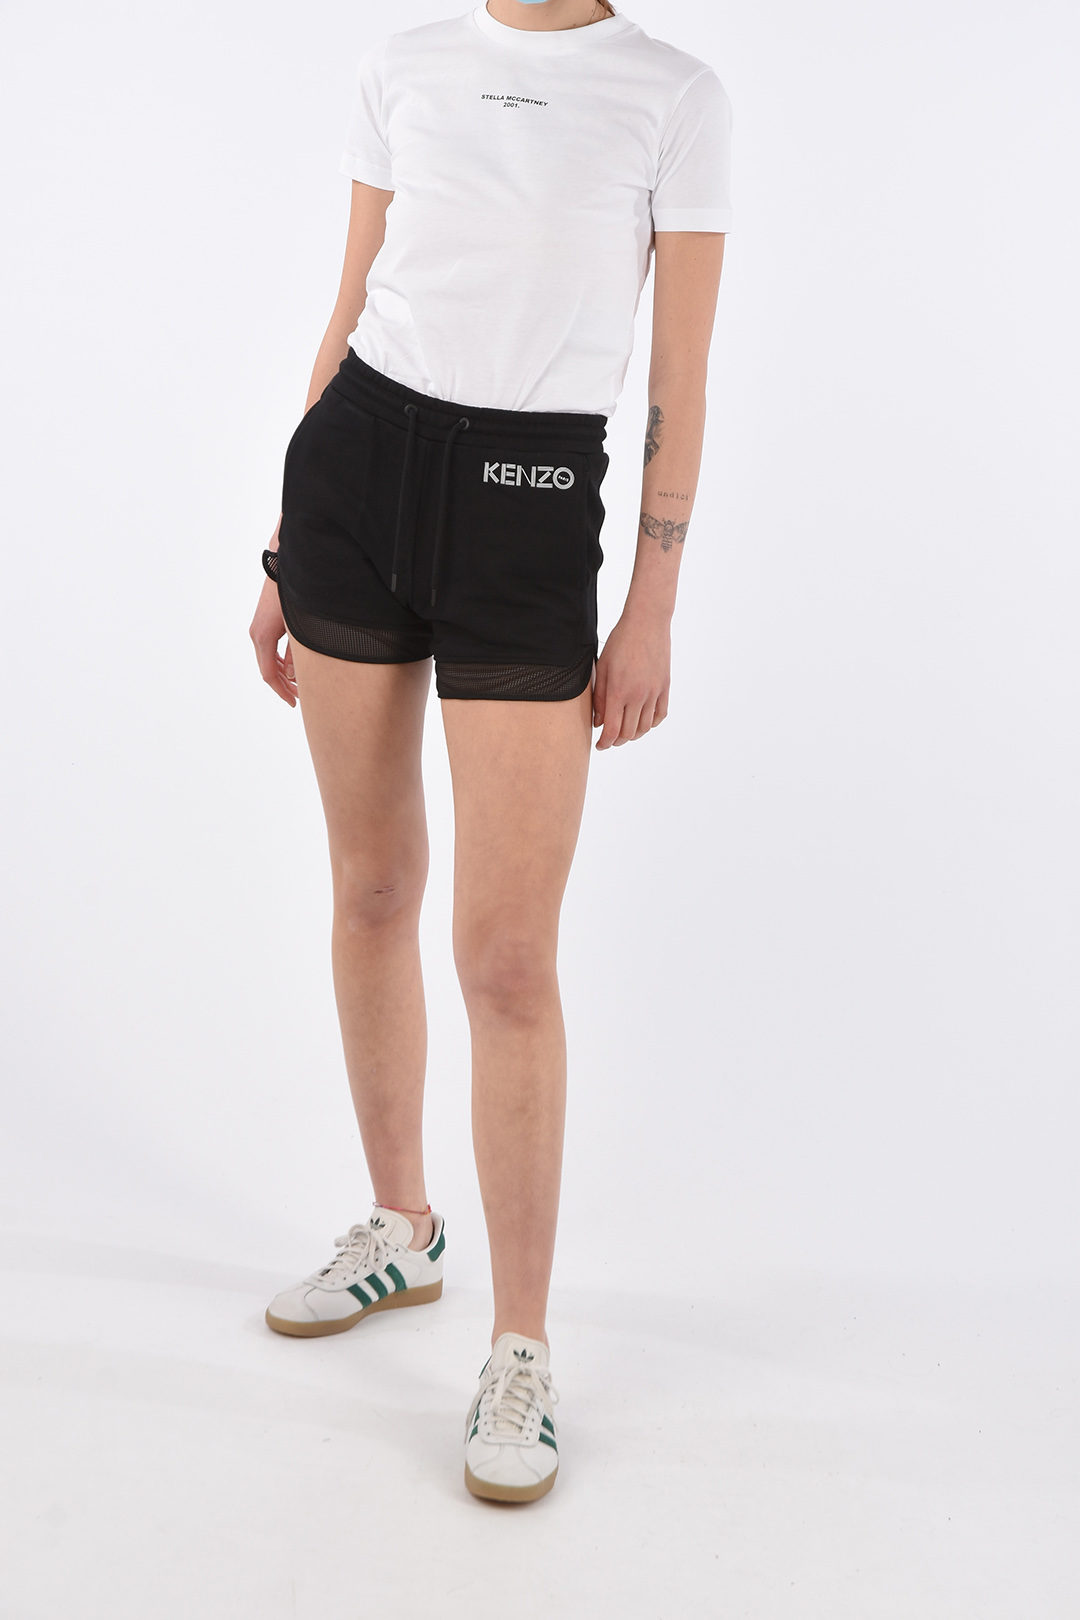 kenzo shorts womens Off 61% - www.loverethymno.com